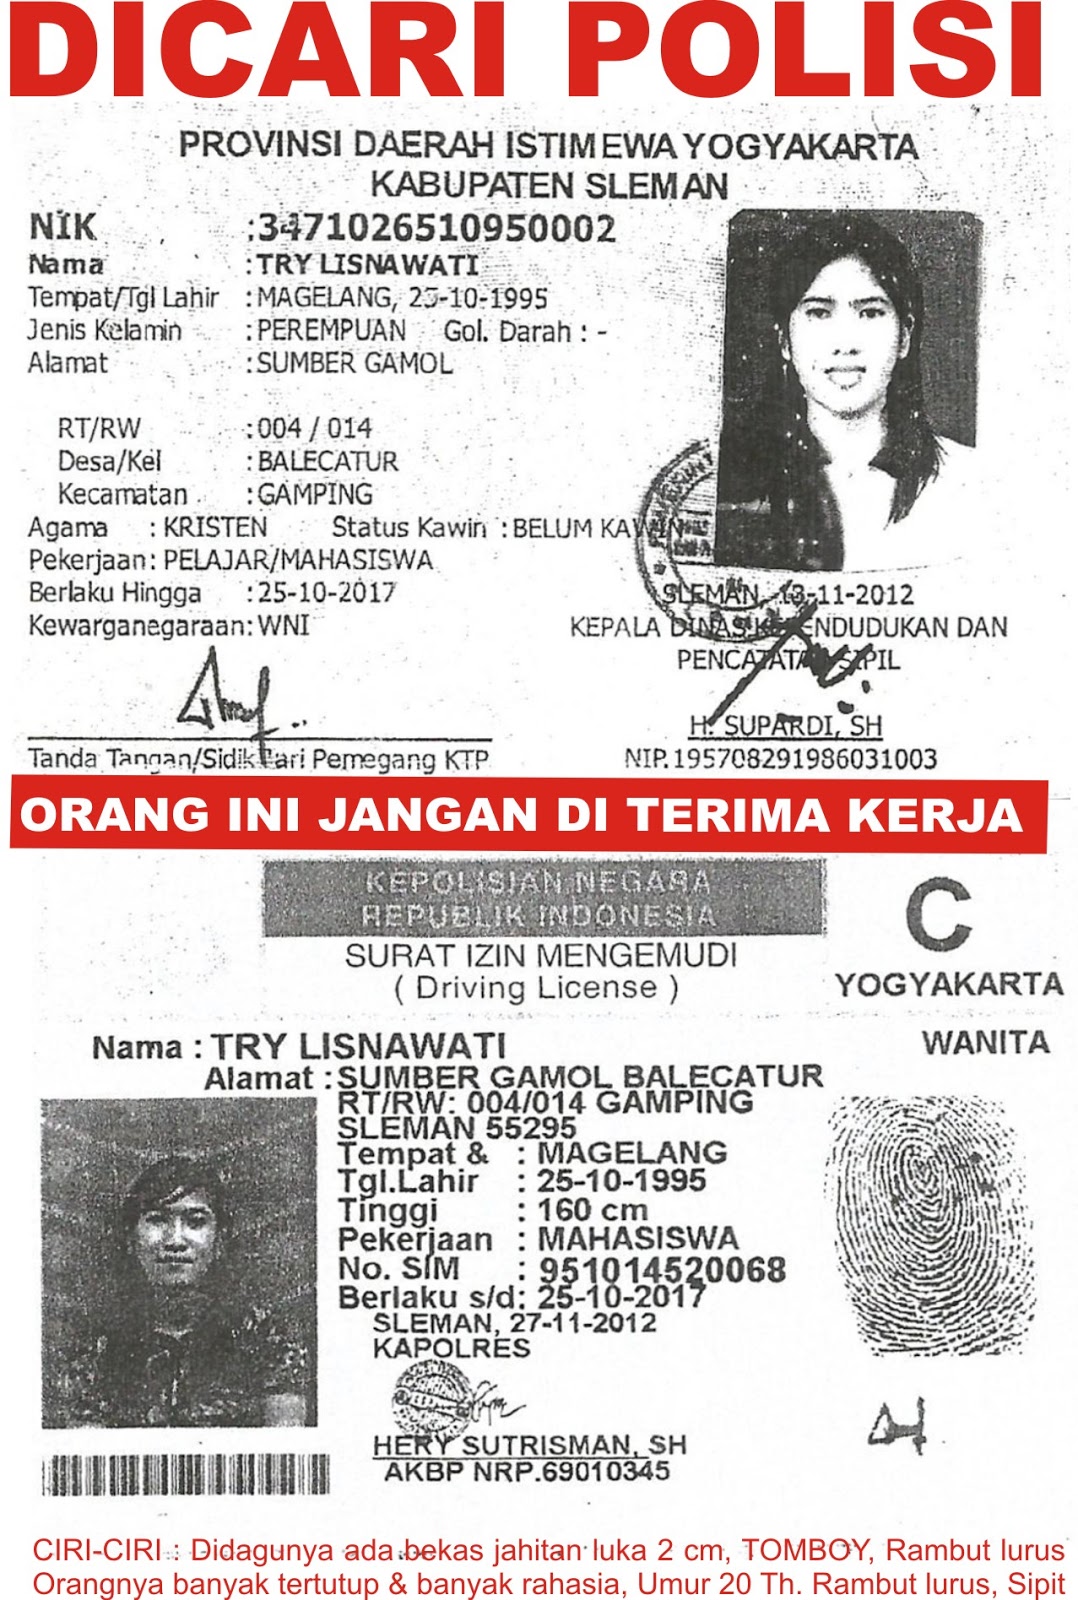 Jakarta, Bandung, Surabaya, Semarang, Yogyakarta, Malang, Gresik